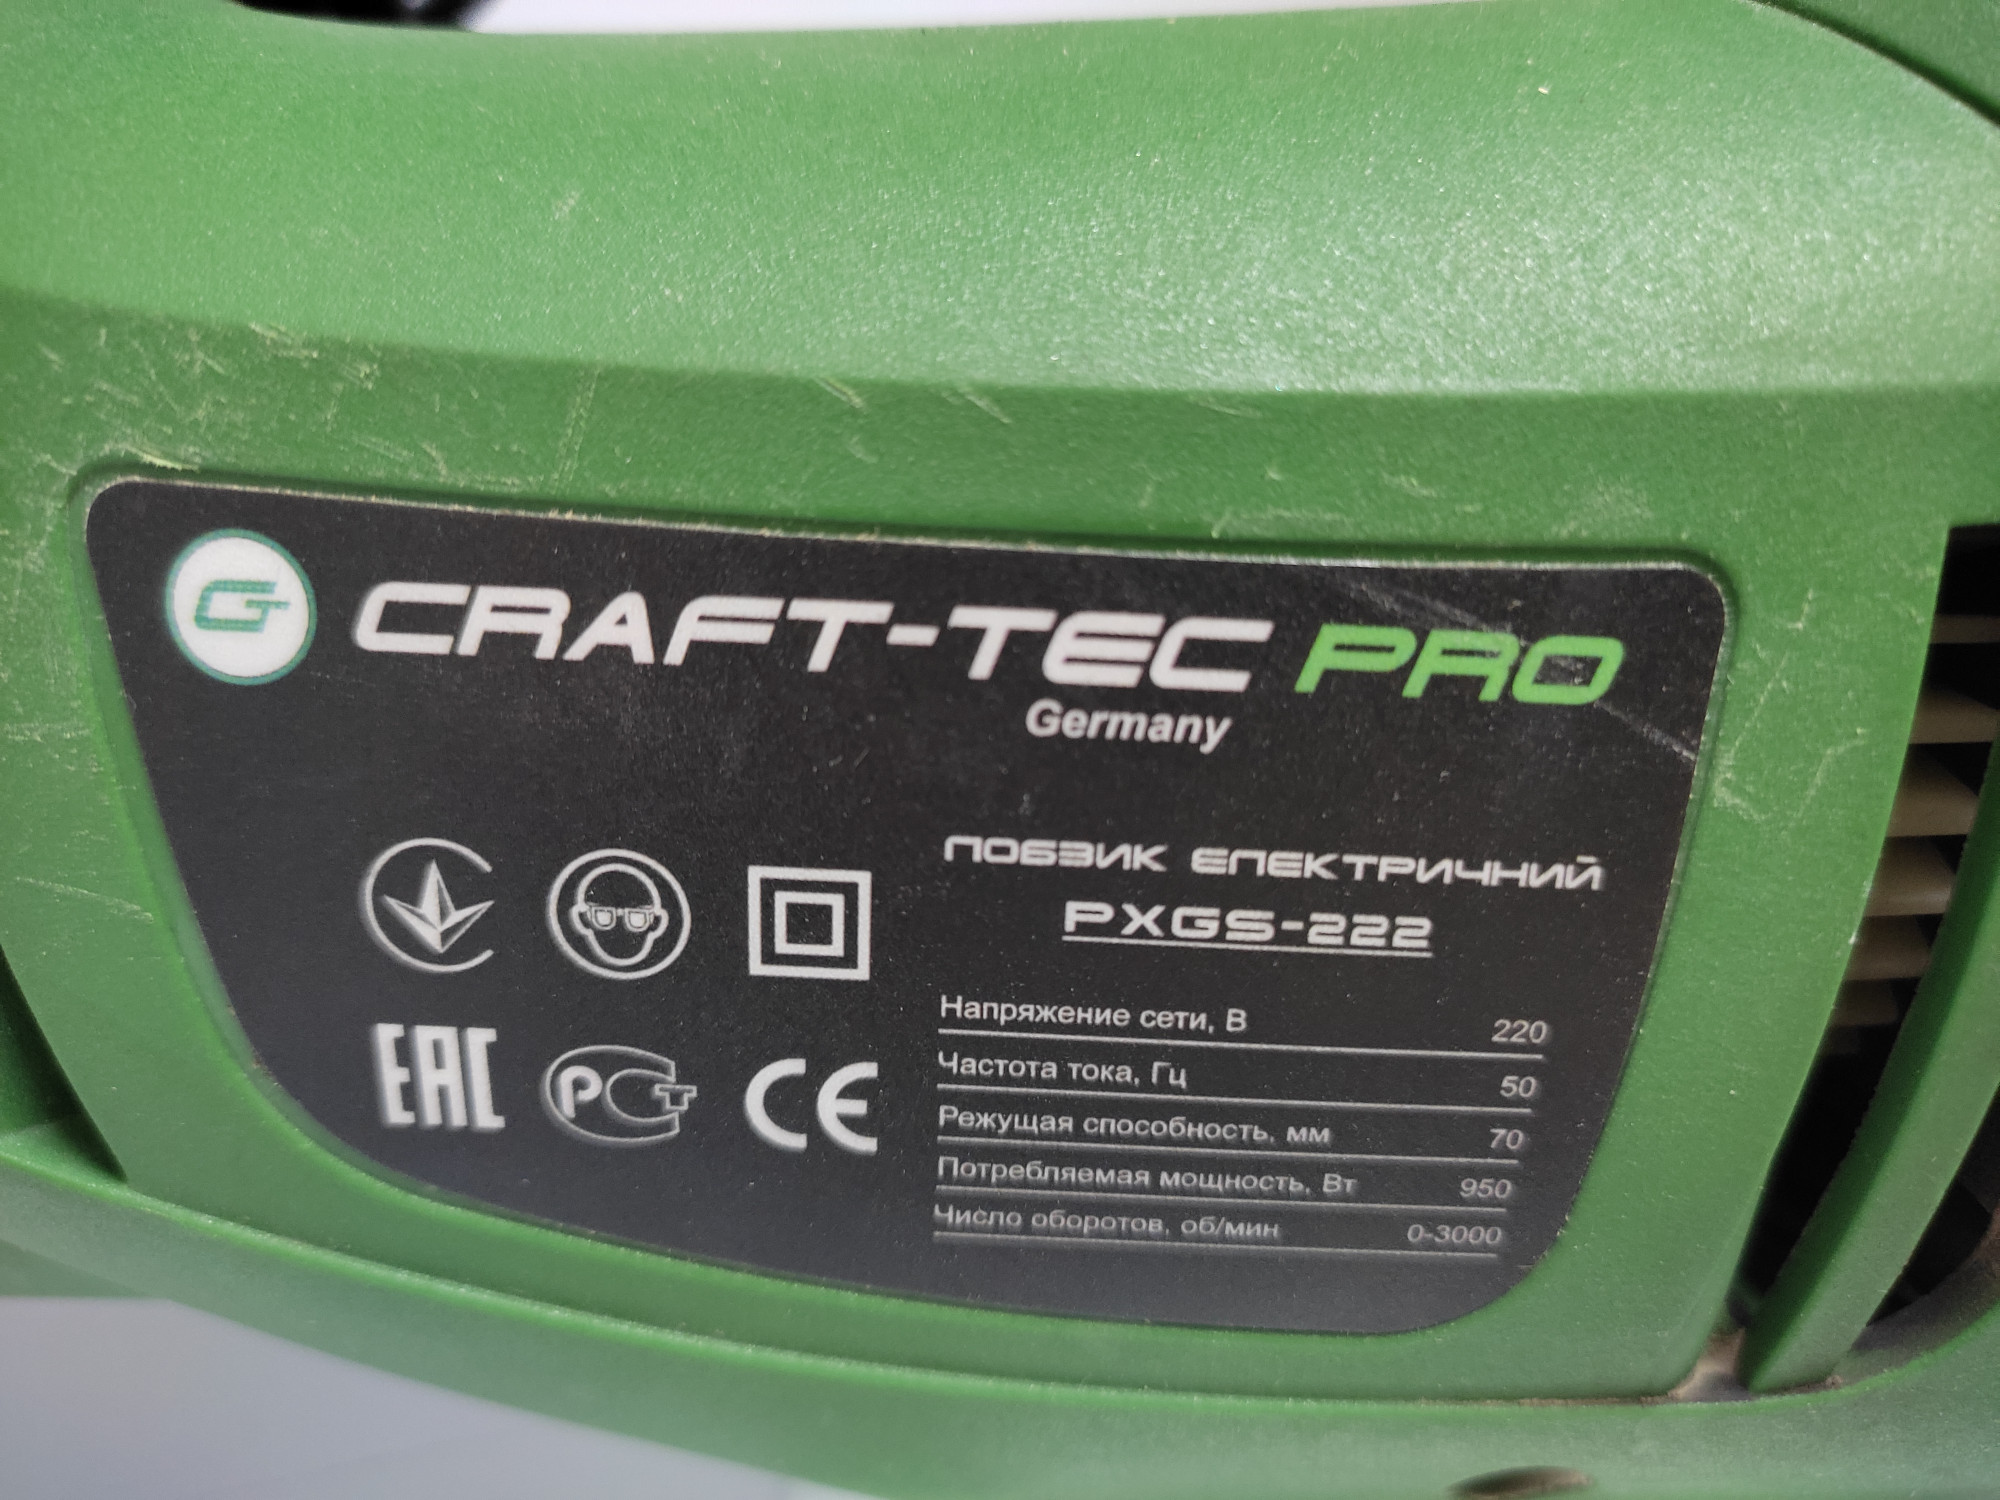 Електролобзик Craft-tec PXGS-222 3